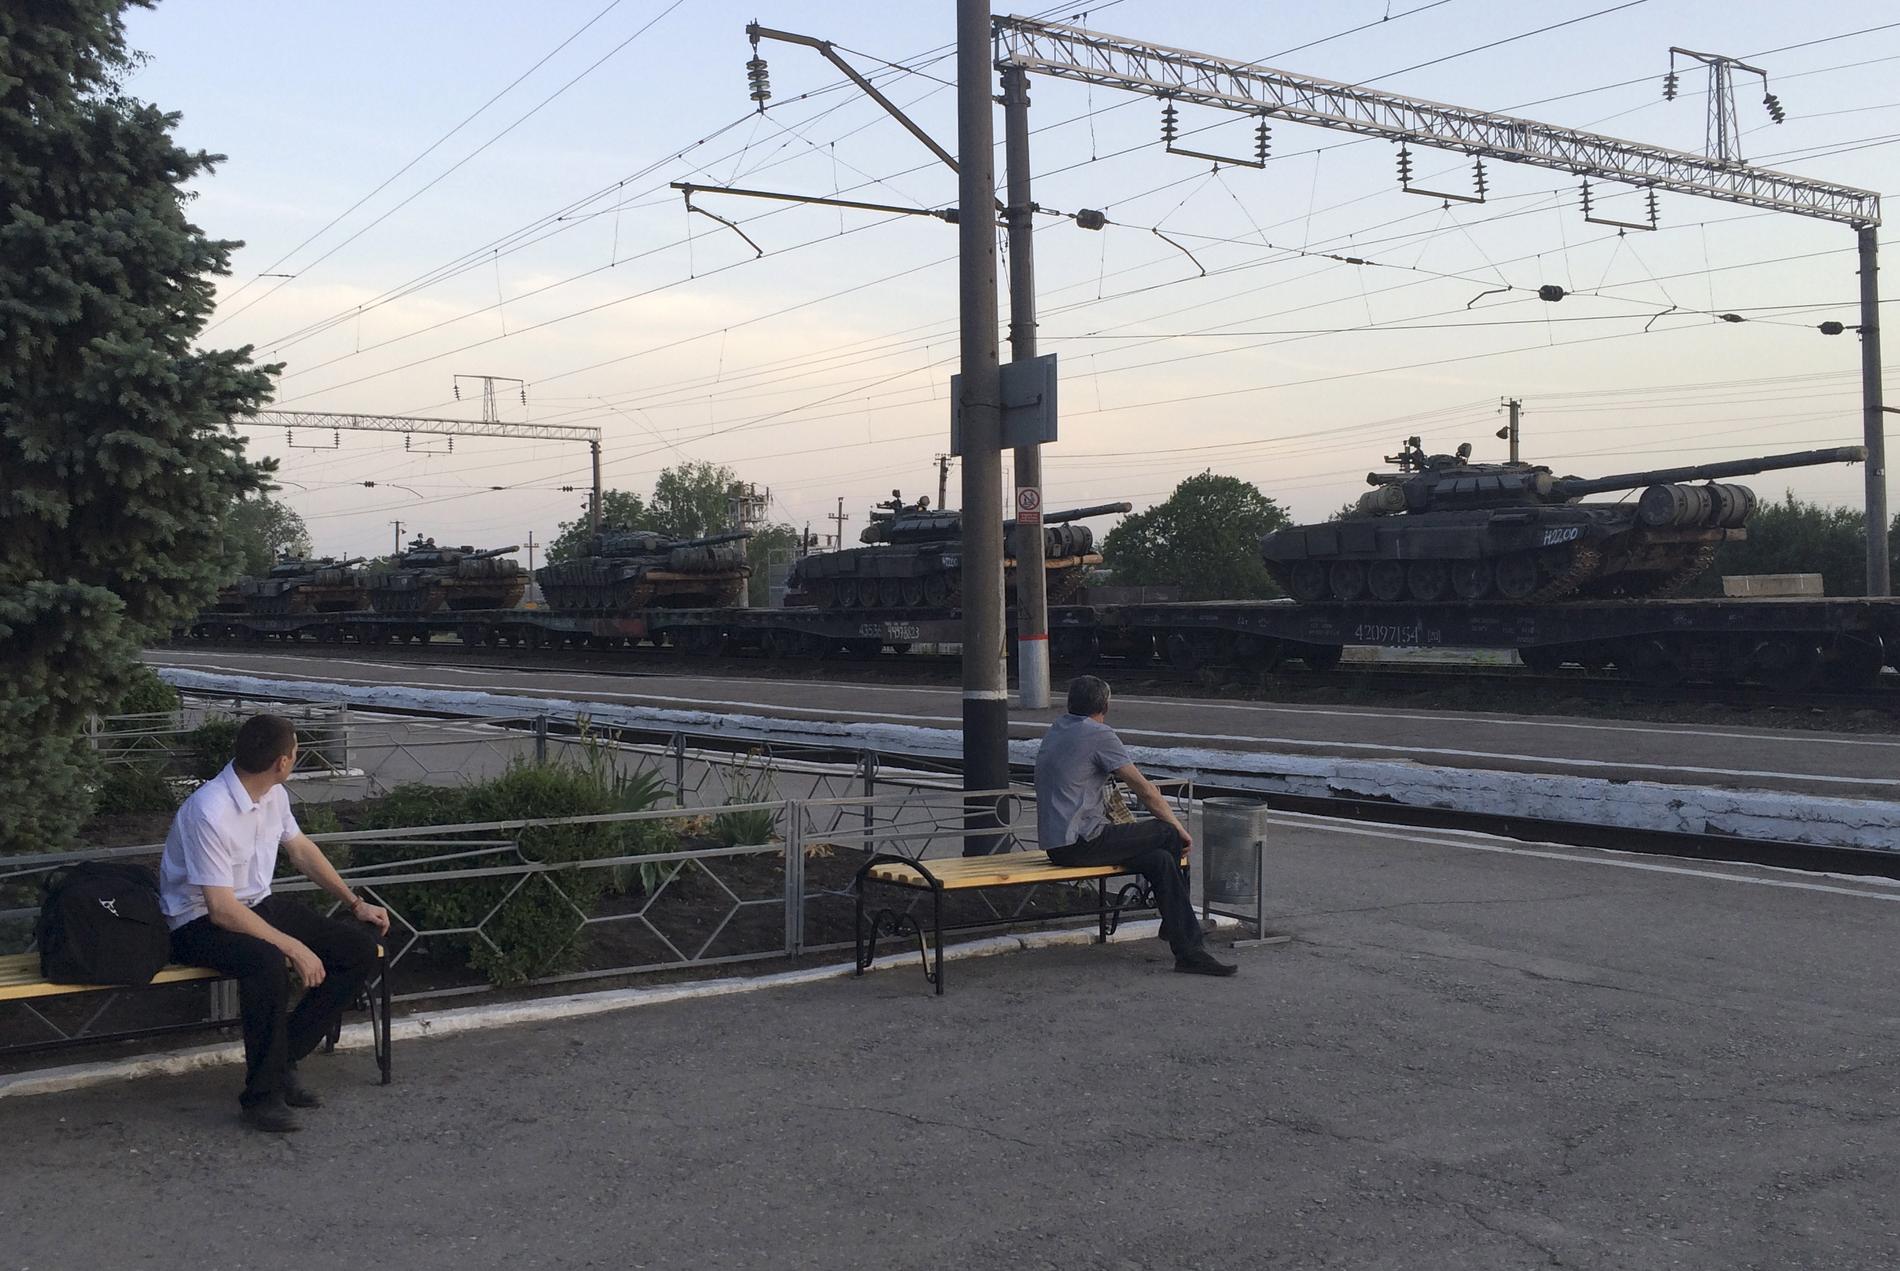 Ryska stridsvagnar anländer med tåg till den ryska staden Matveev Kurgan nära den ukrainska gränsen.